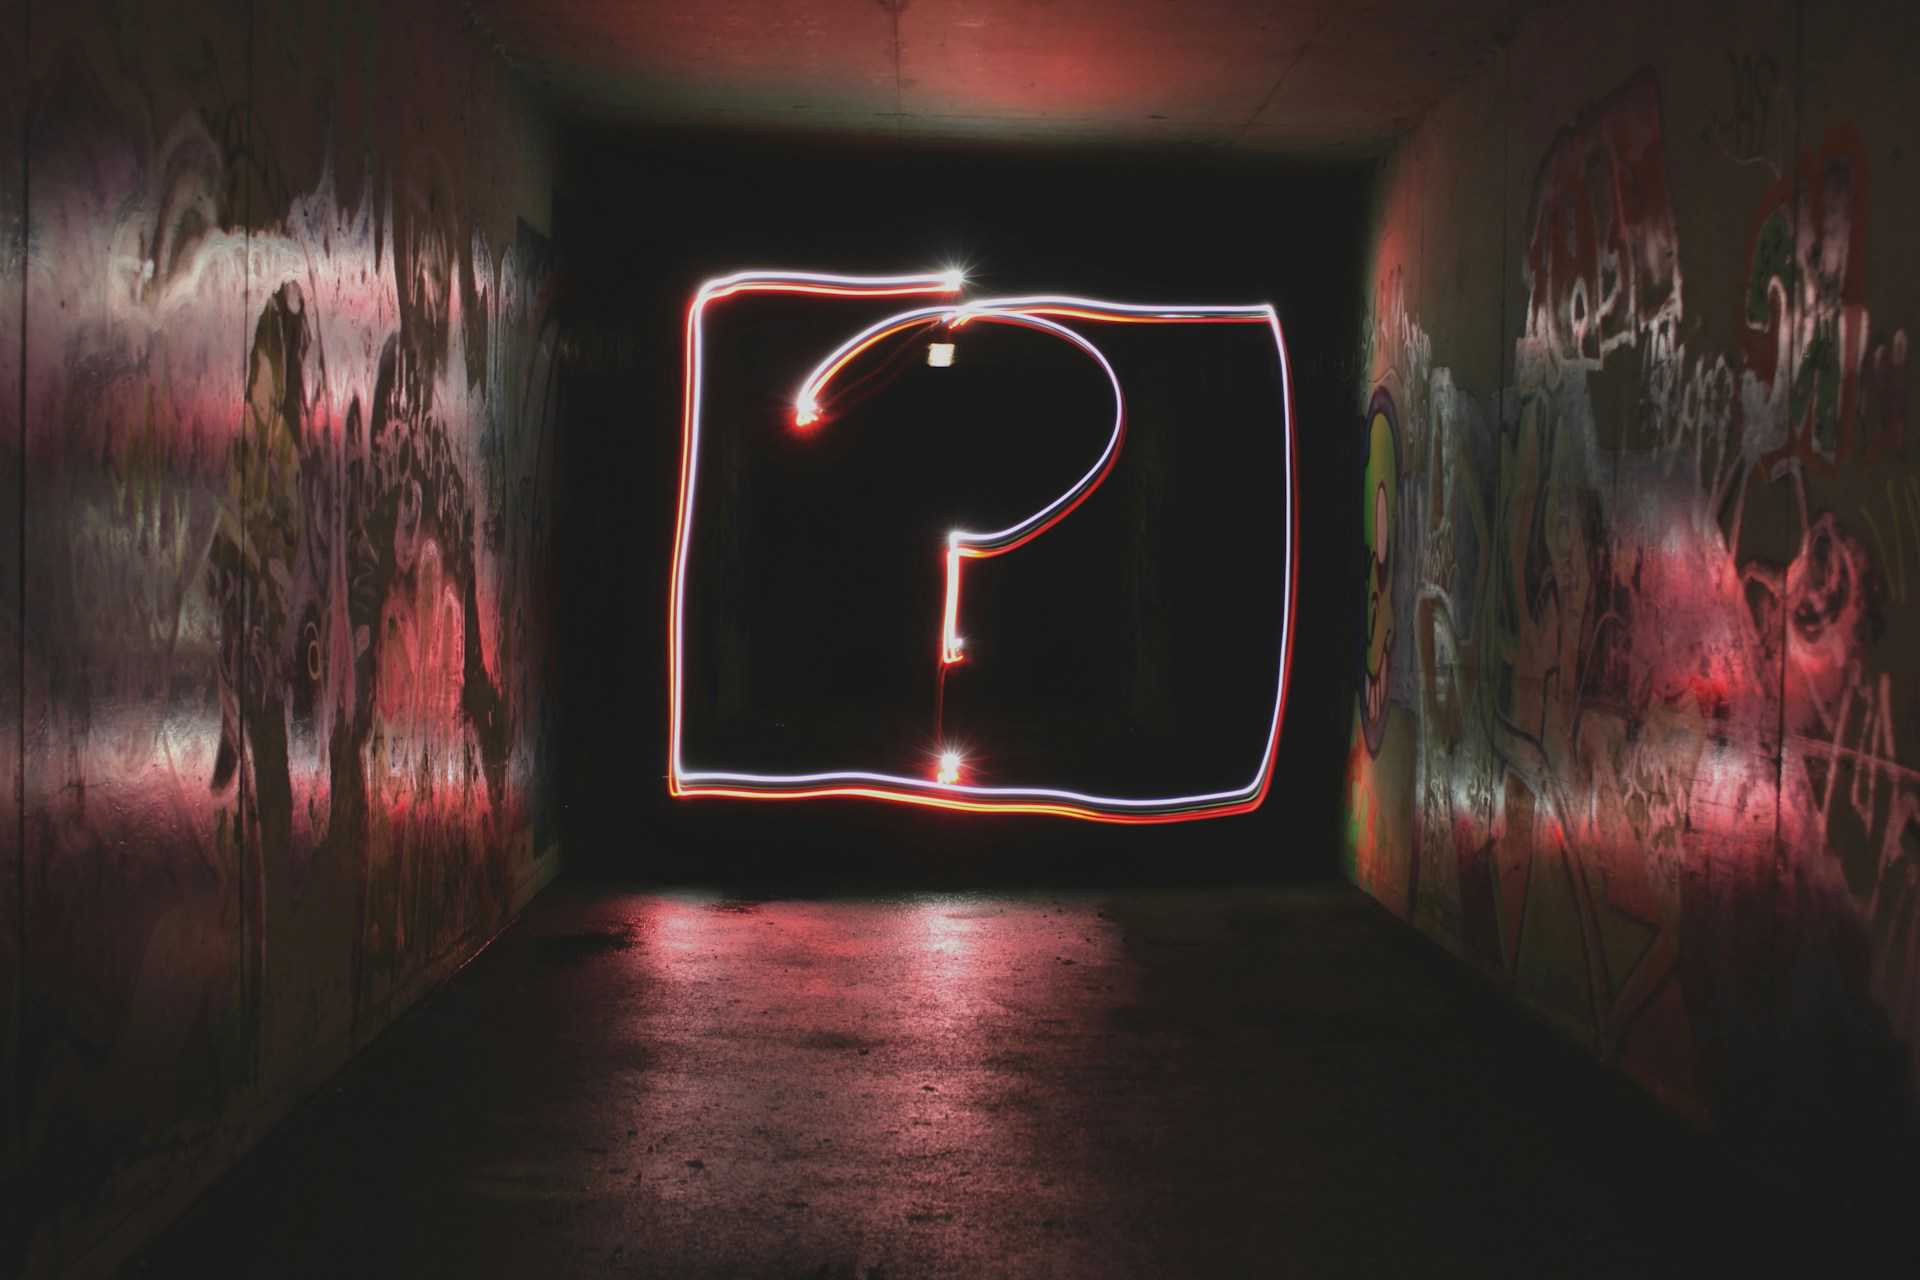 Un gran signo de interrogación de neón rojo y blanco ilumina una pared grafitada en un túnel oscuro, creando un ambiente de misterio y curiosidad.